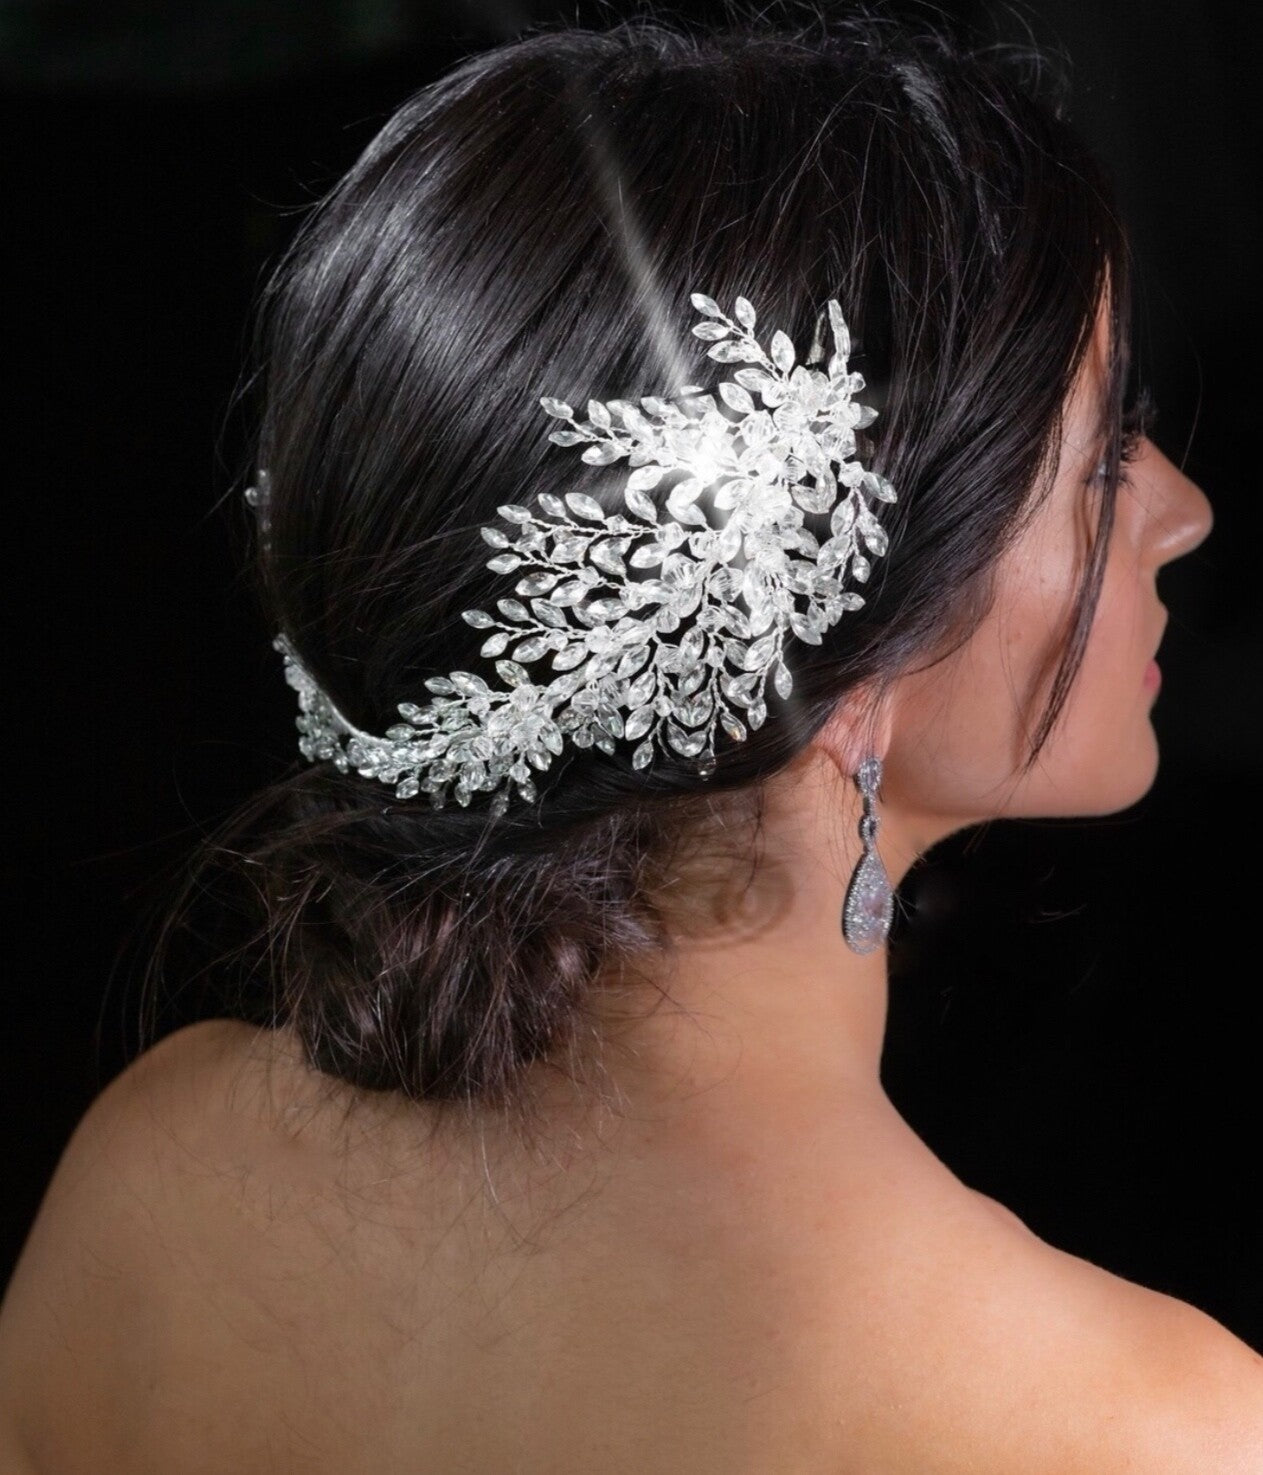 Margaret - Exquisite Swarovski crystal wedding headpiece